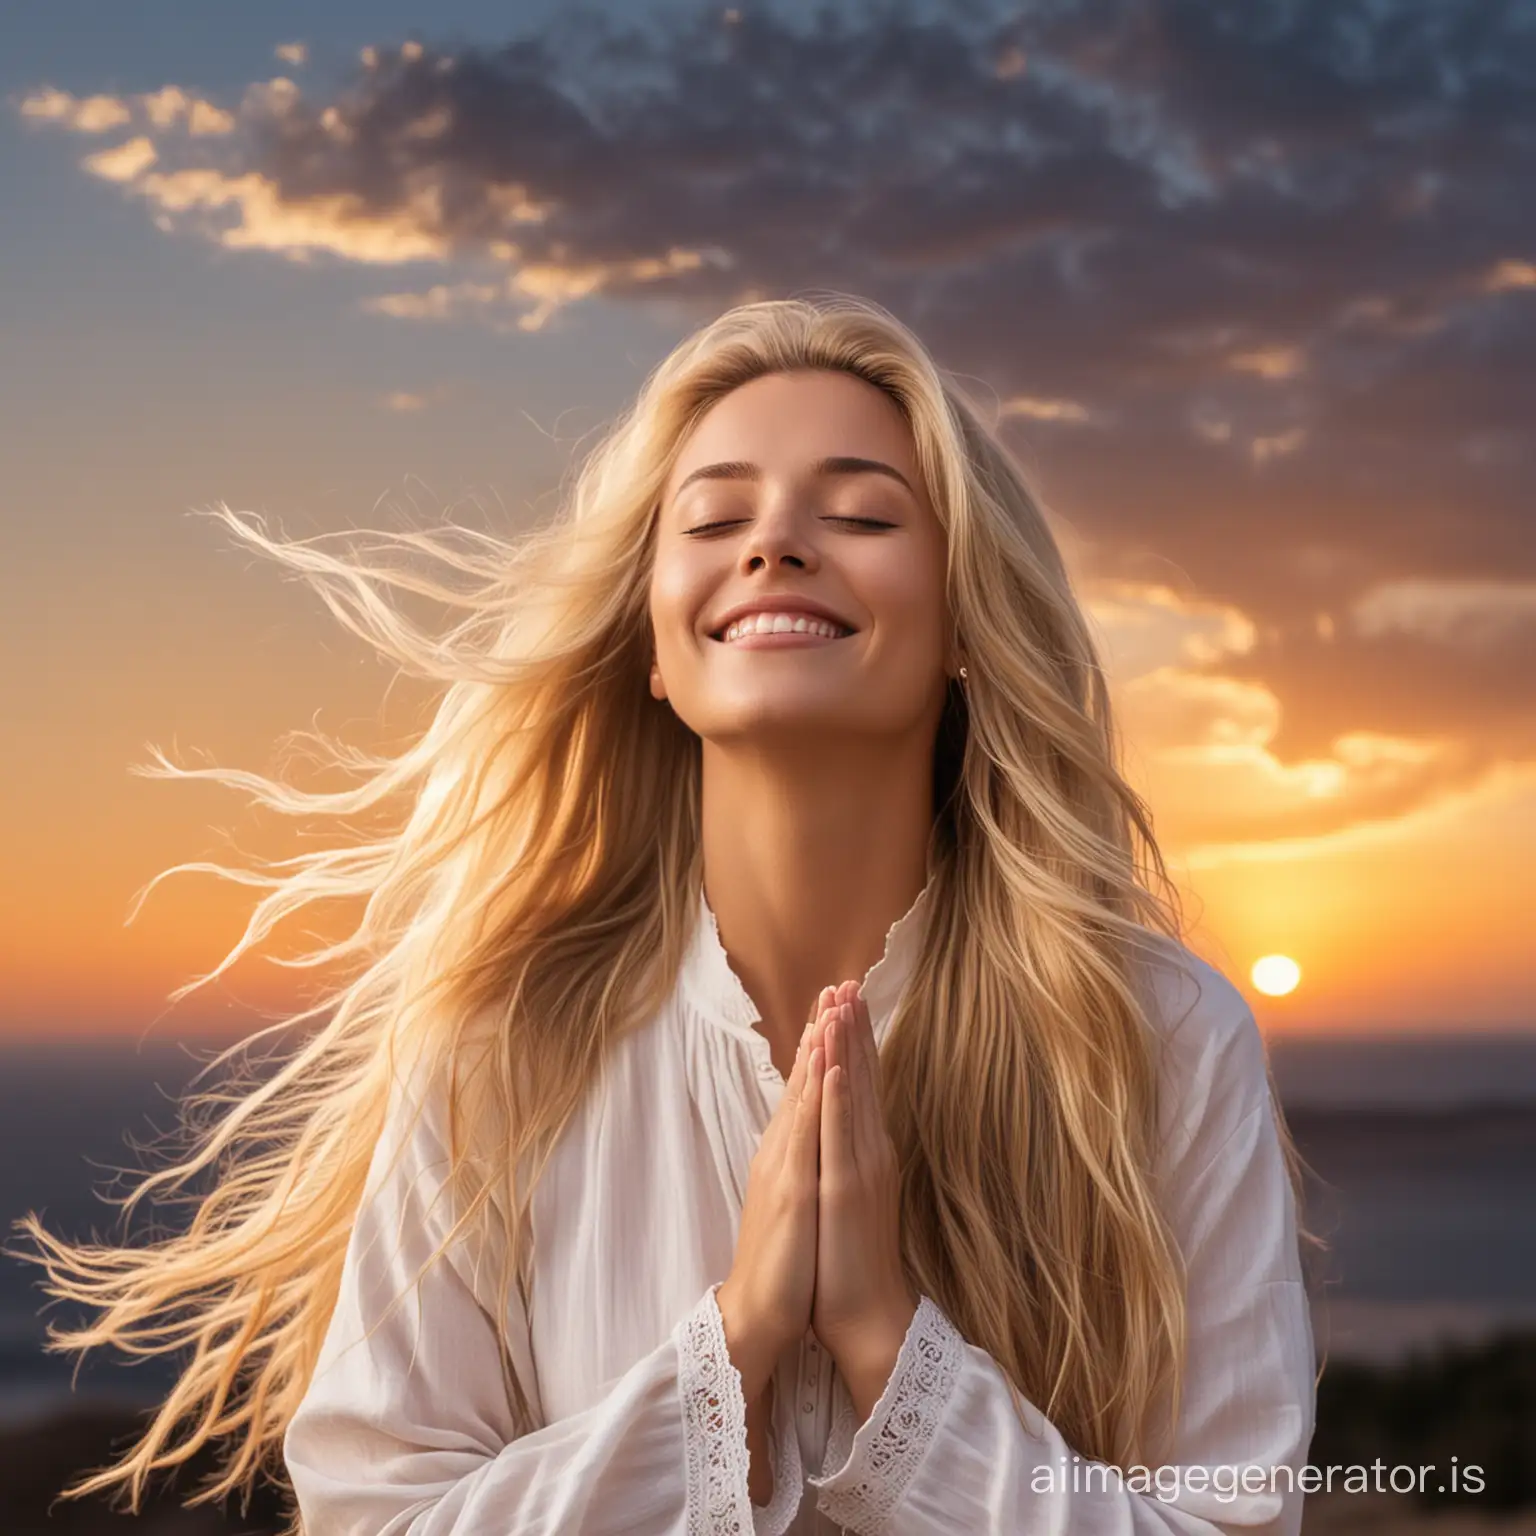 mujer con ojos cerrados, pelo güero largo con viento en el pelo, cielo iluminado de fondo, sonriendo y manos en posición de oración